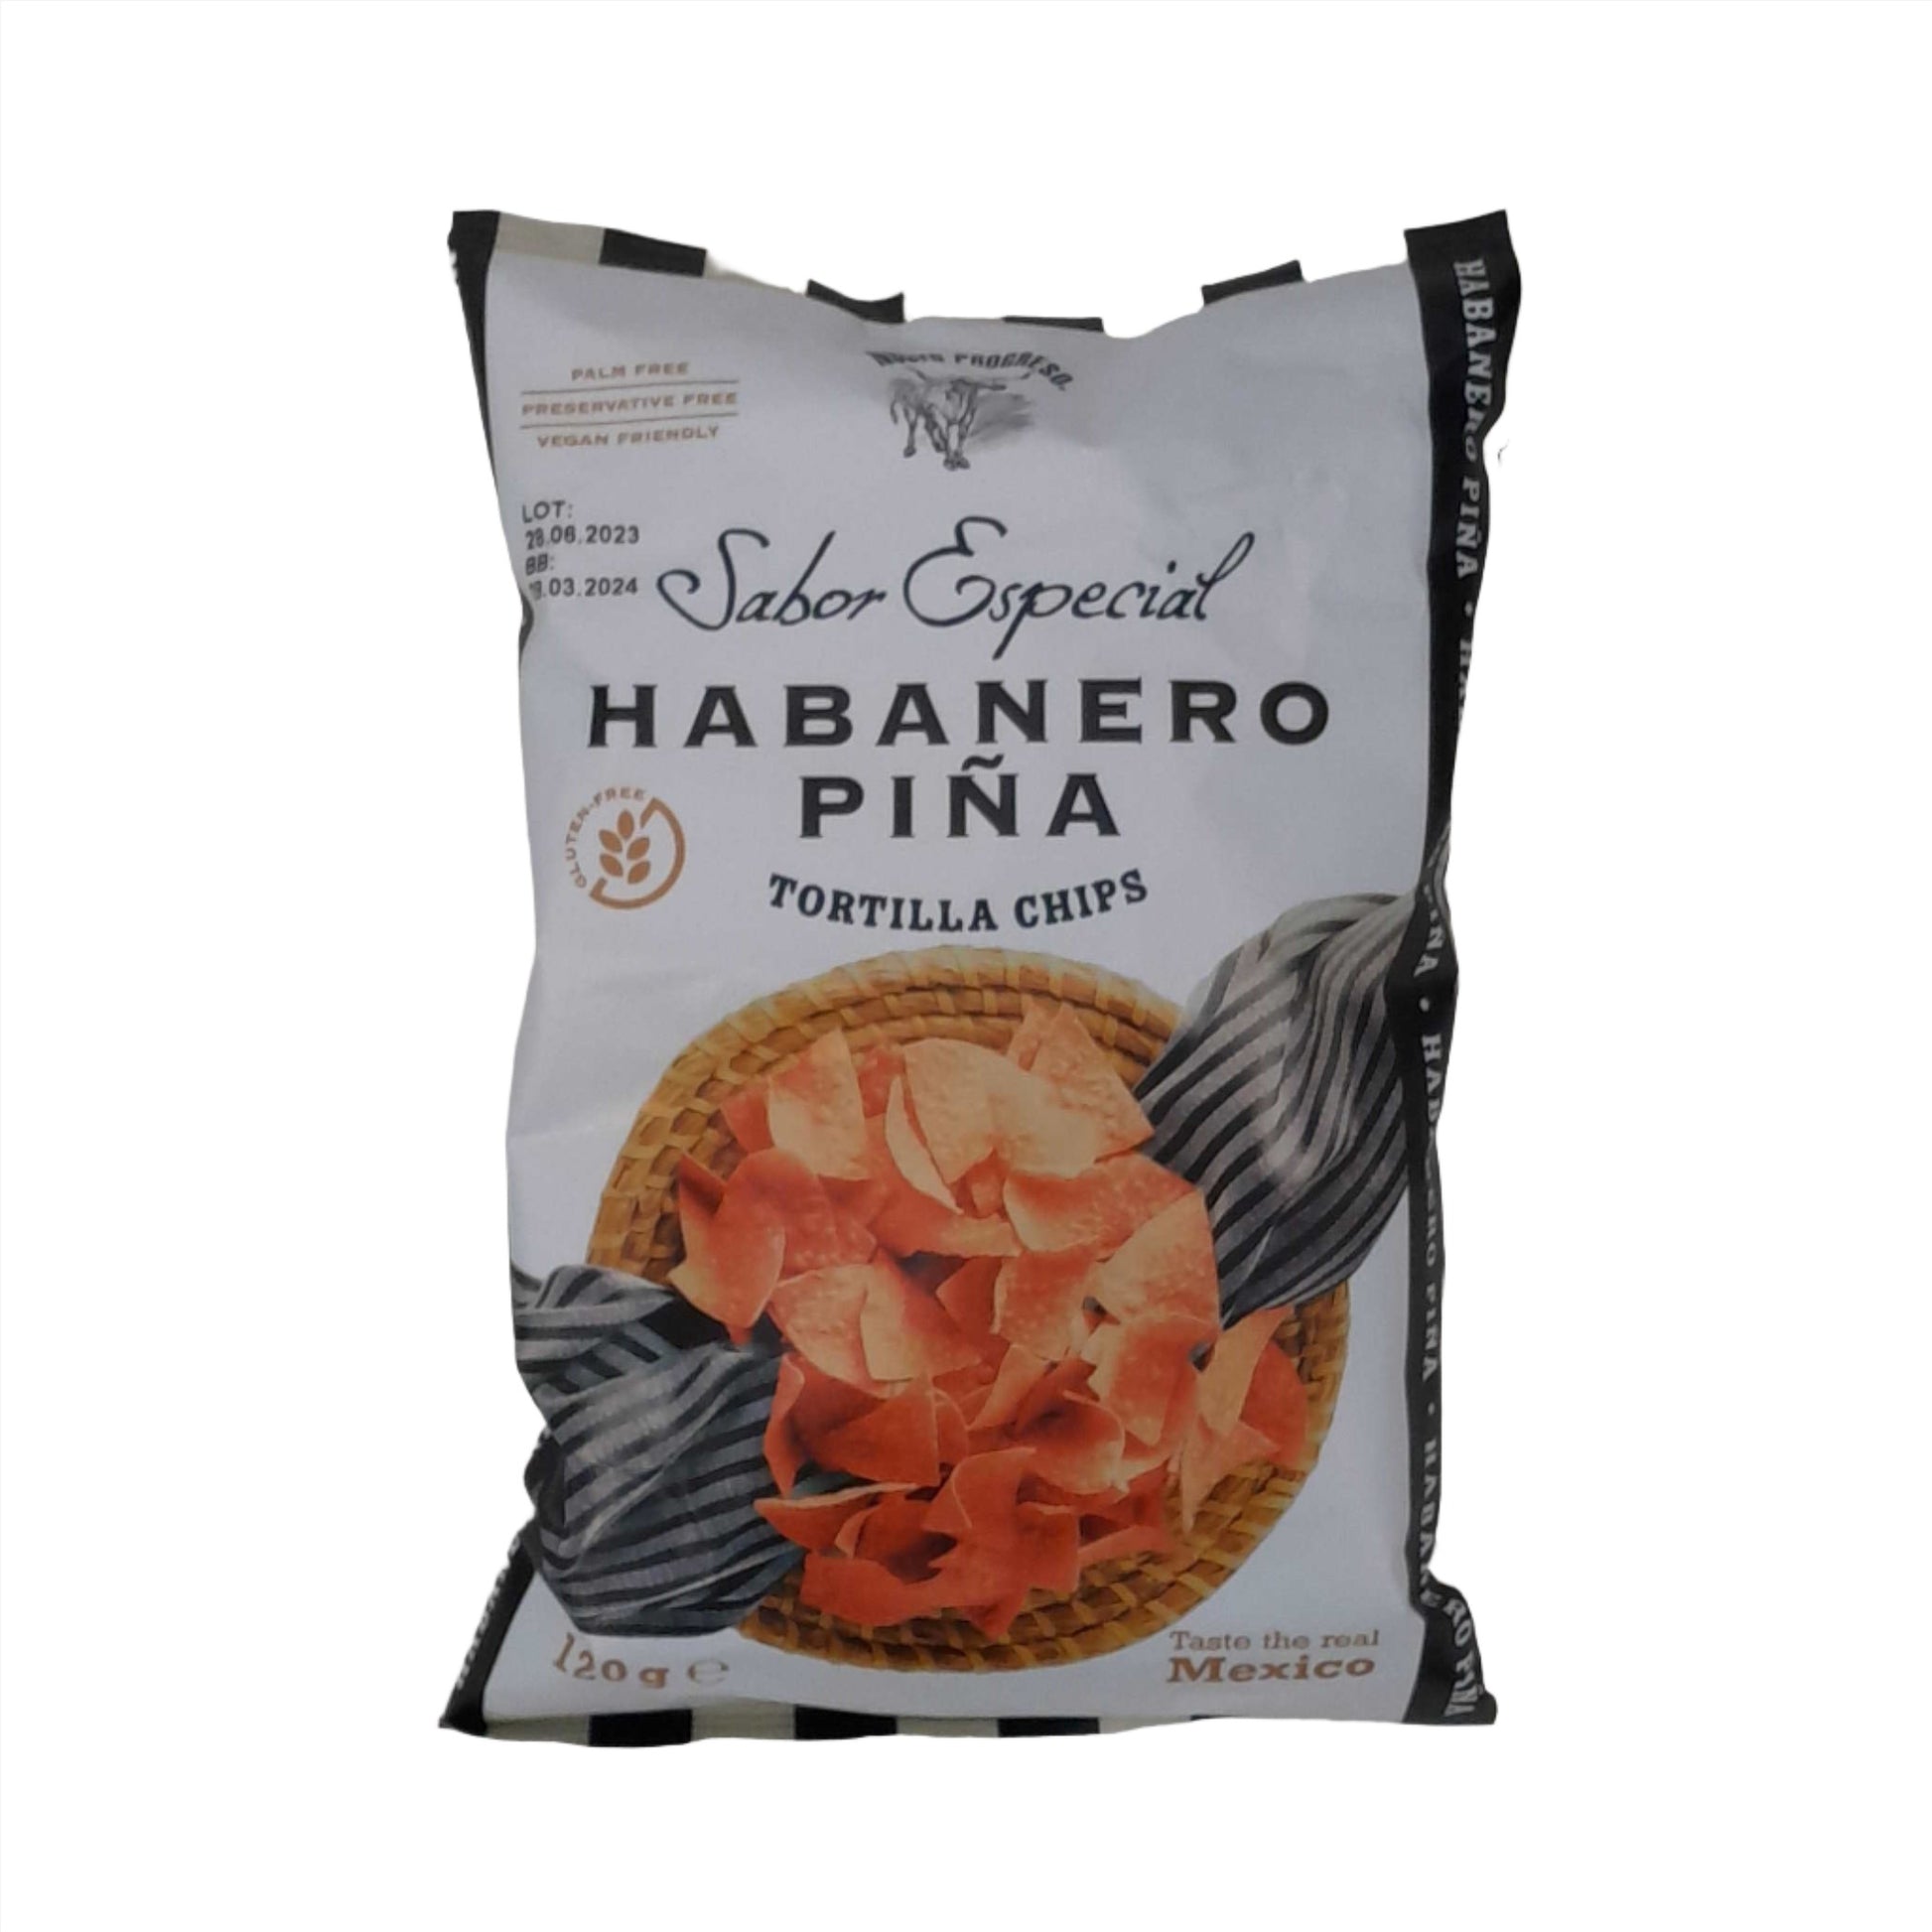 Nuevo Progreso Habanero Pina Tortilla Chips 120g - Worldster Markt e.K.